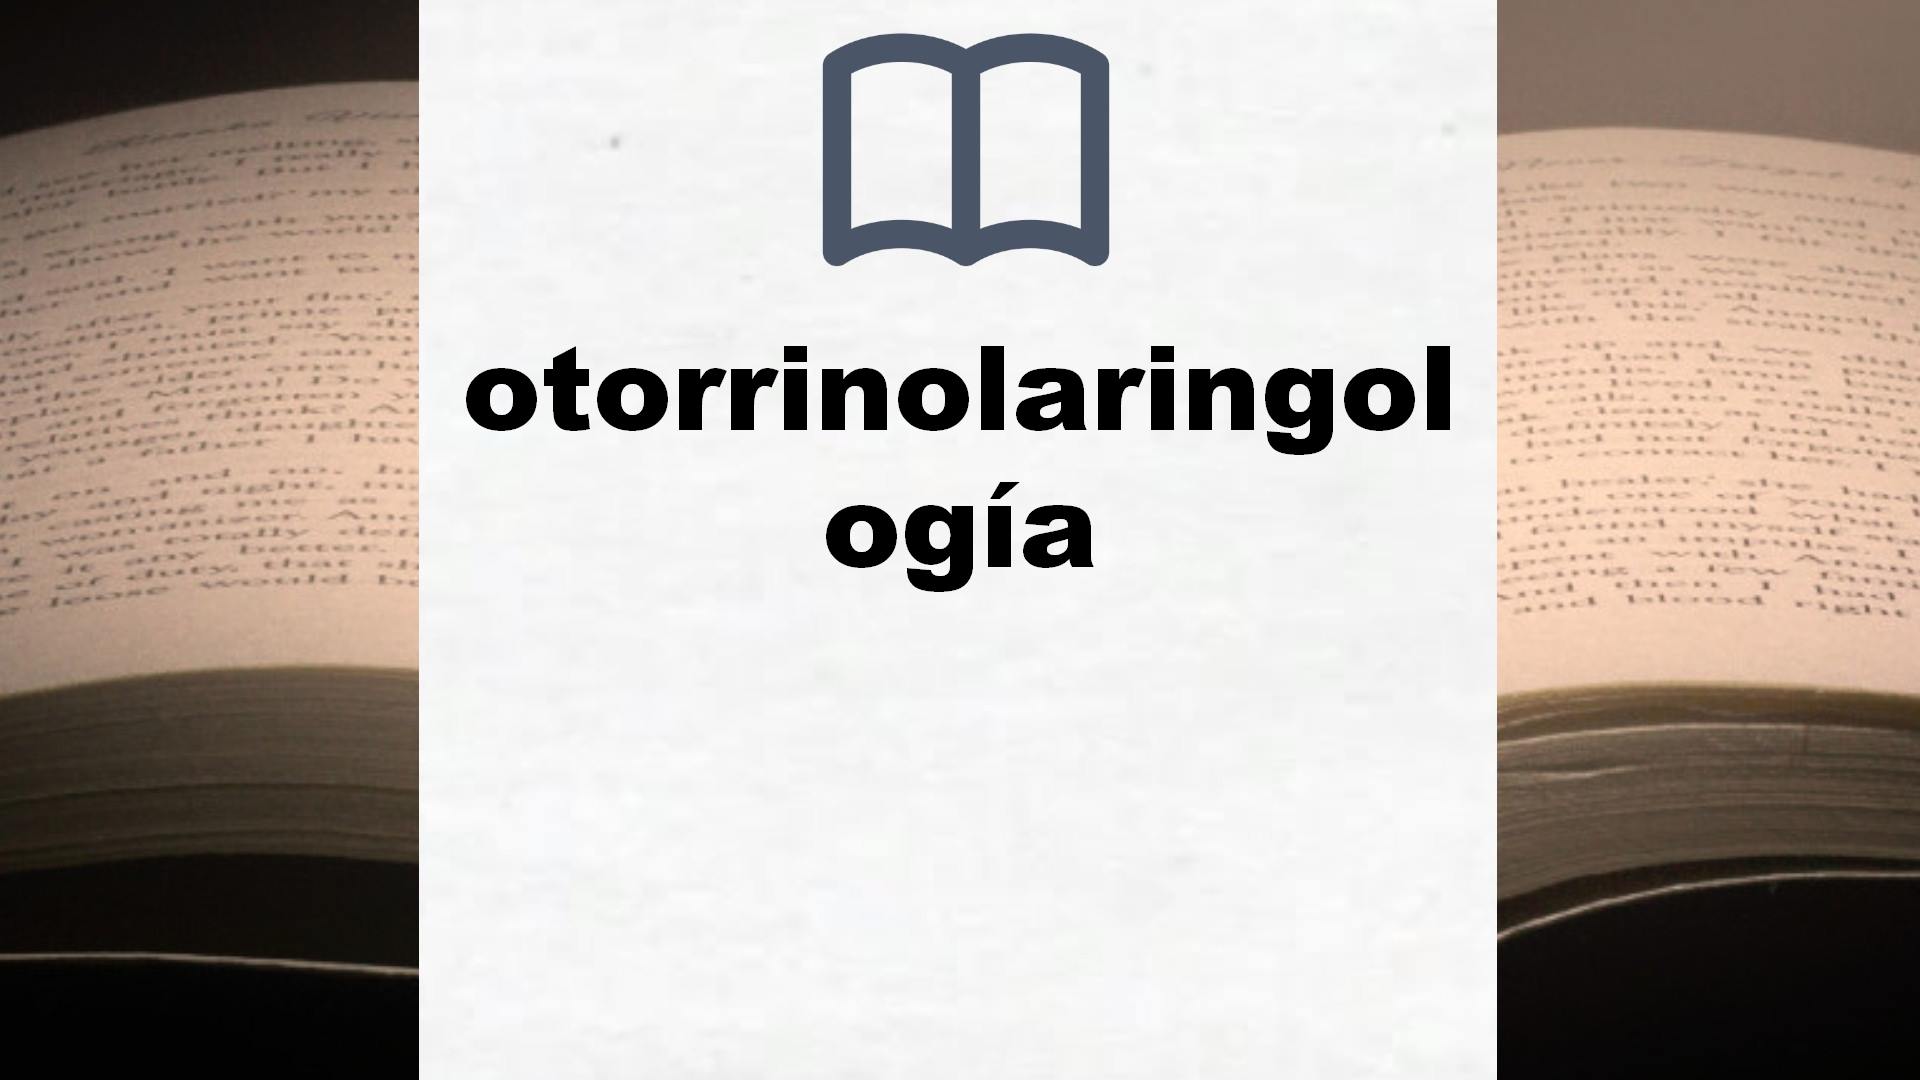 Libros sobre otorrinolaringología